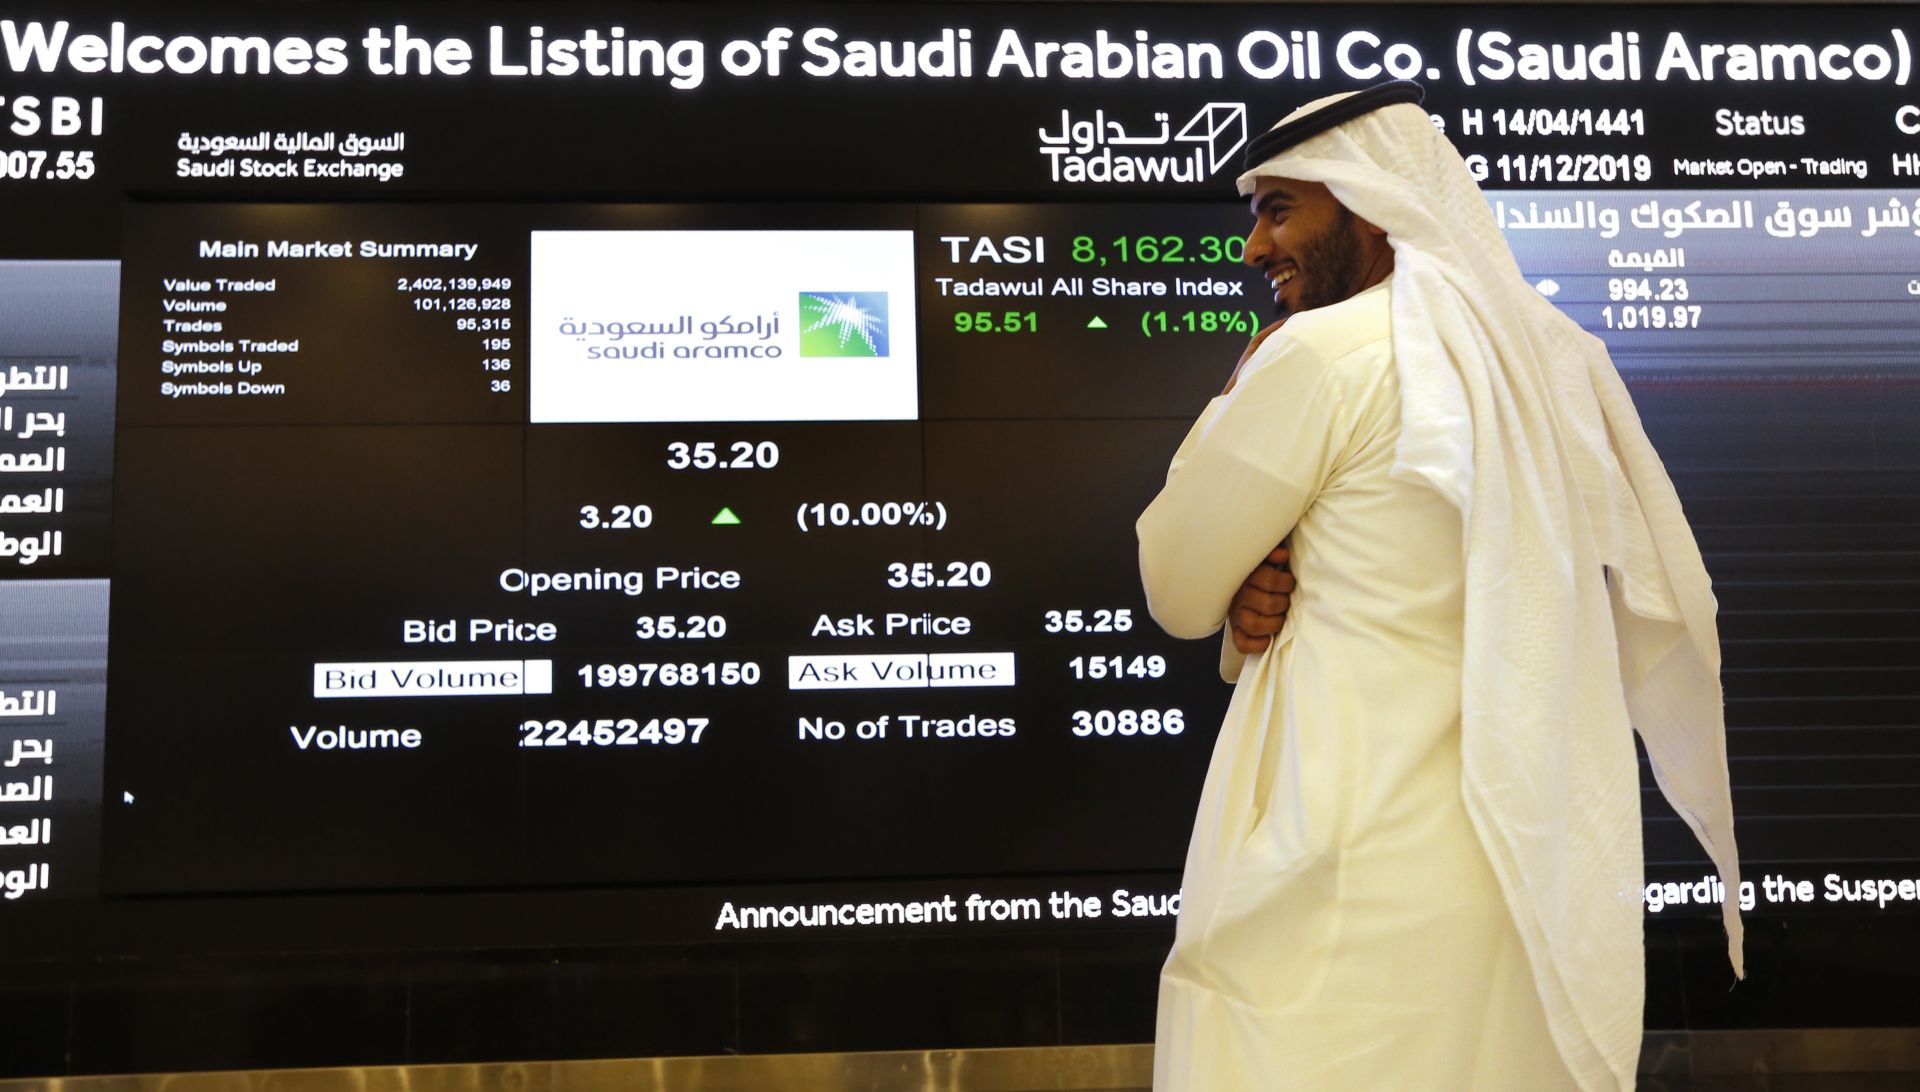 Списъкът се оглавява от Сауди Арамко, оценена на 1.88 трлн. долара